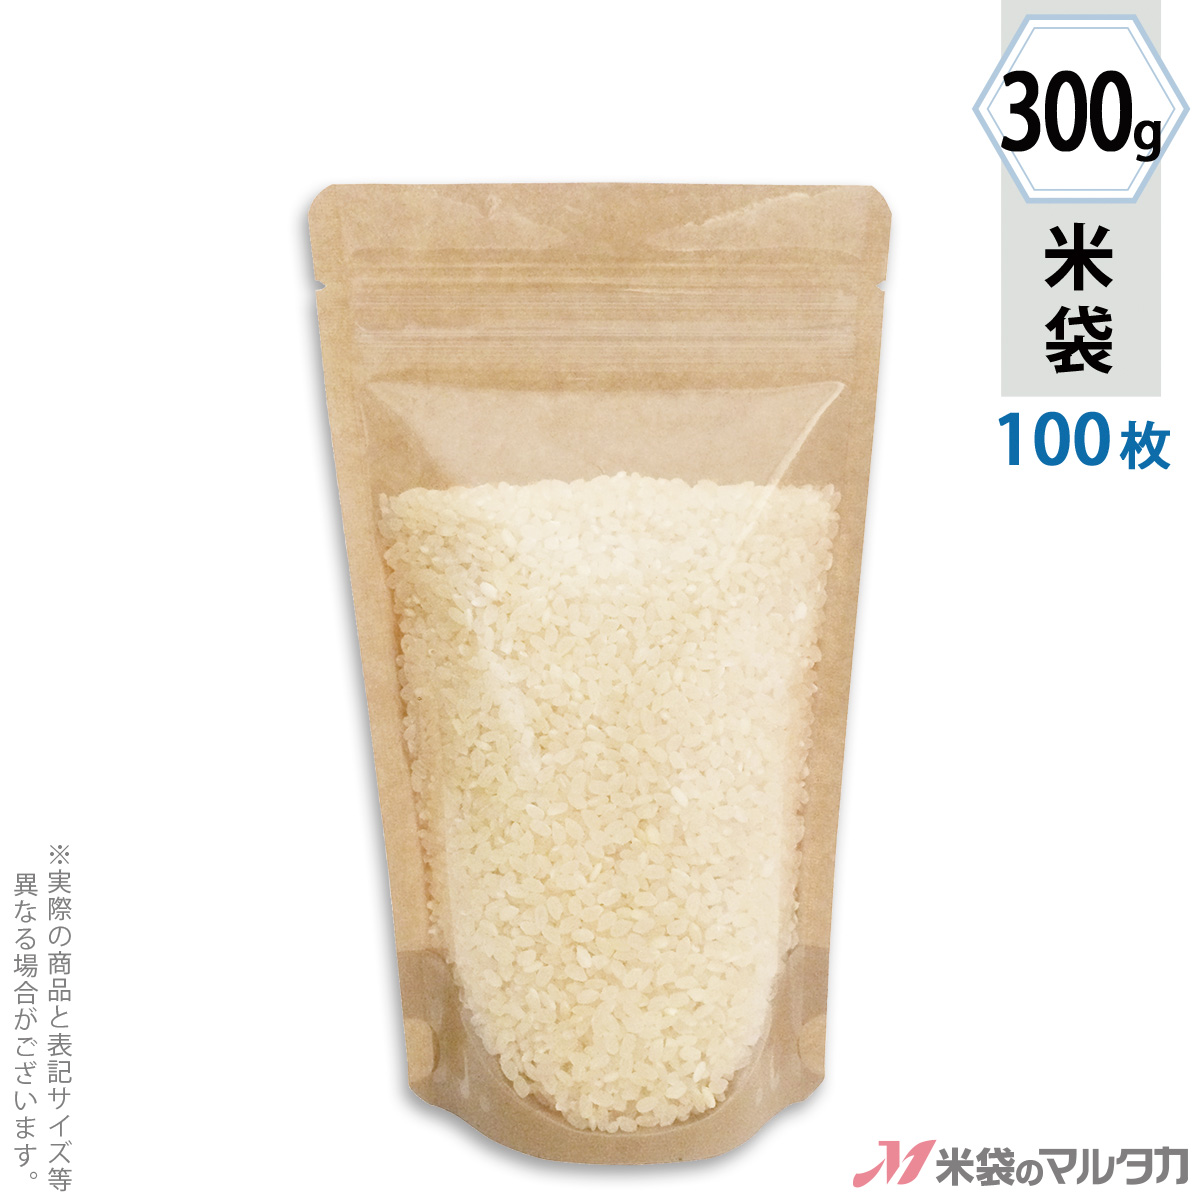 【楽天市場】米袋 ラミ フレブレス 山形産はえぬき 旬来 10kg 100枚